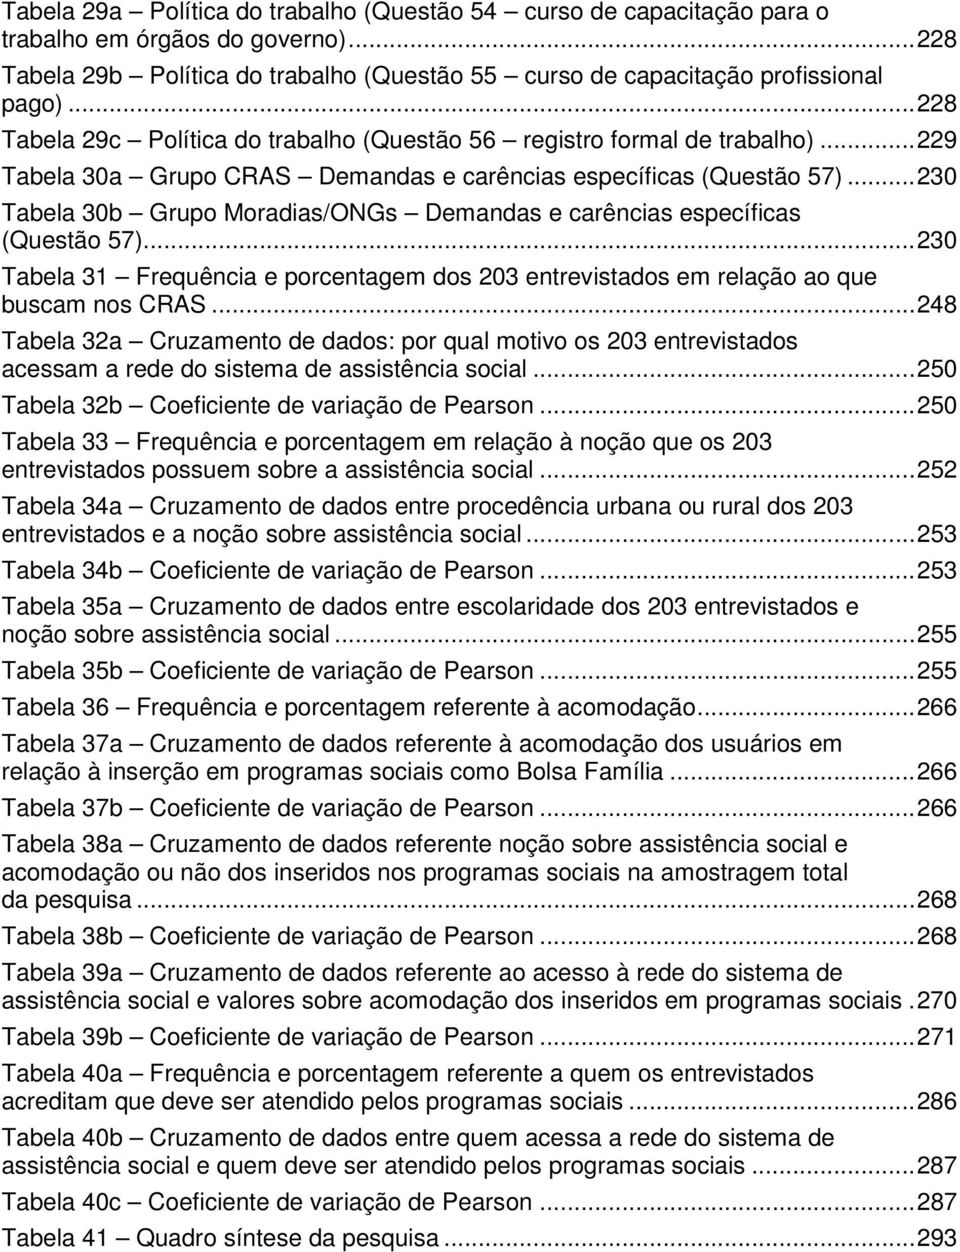 ..230 Tabela 30b Grupo Moradias/ONGs Demandas e carências específicas (Questão 57)...230 Tabela 31 Frequência e porcentagem dos 203 entrevistados em relação ao que buscam nos CRAS.